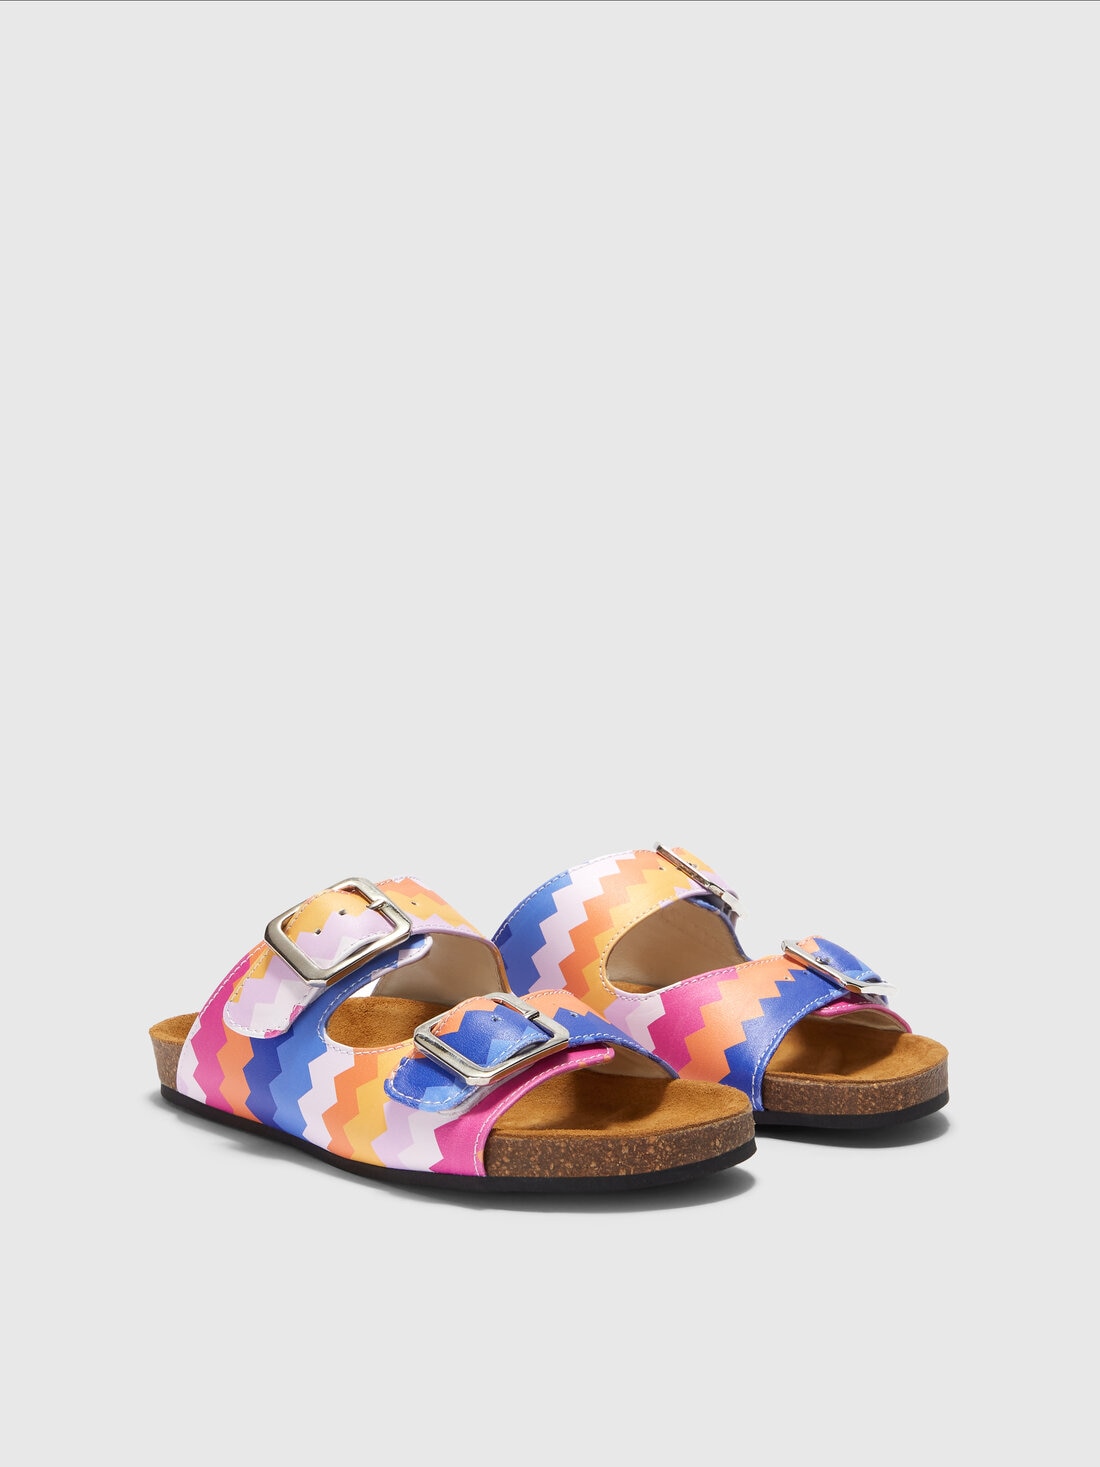 Sandali con doppia fascia motivo chevron, Multicolore  - KS24SY01BV00FWSM923 - 1